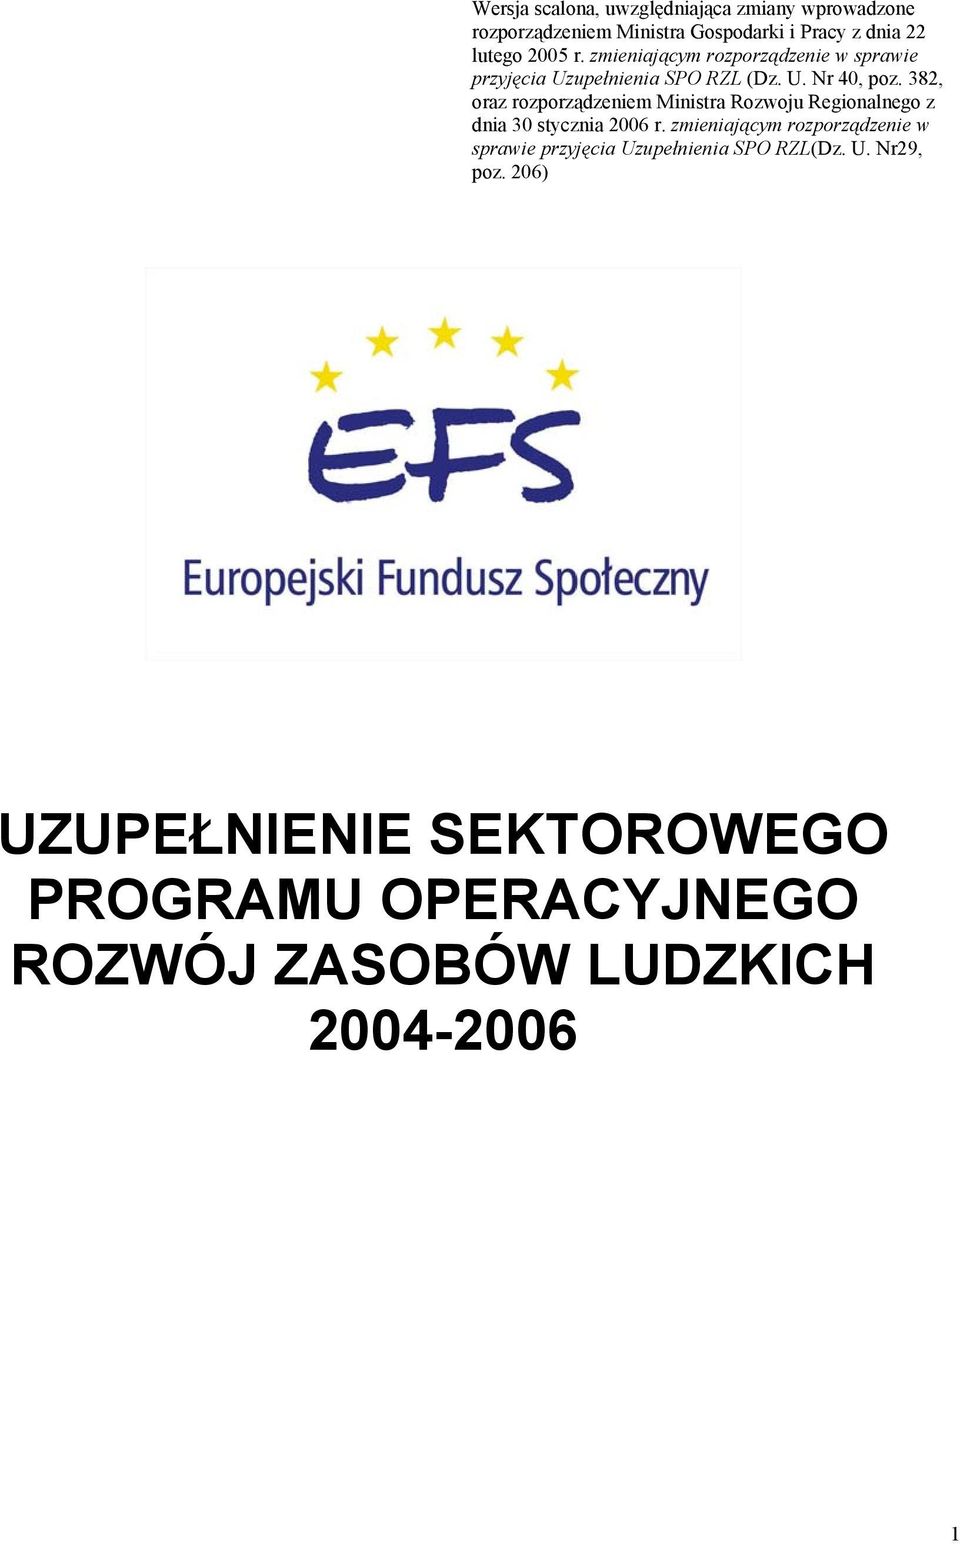 382, oraz rozporządzeniem Ministra Rozwoju Regionalnego z dnia 30 stycznia 2006 r.